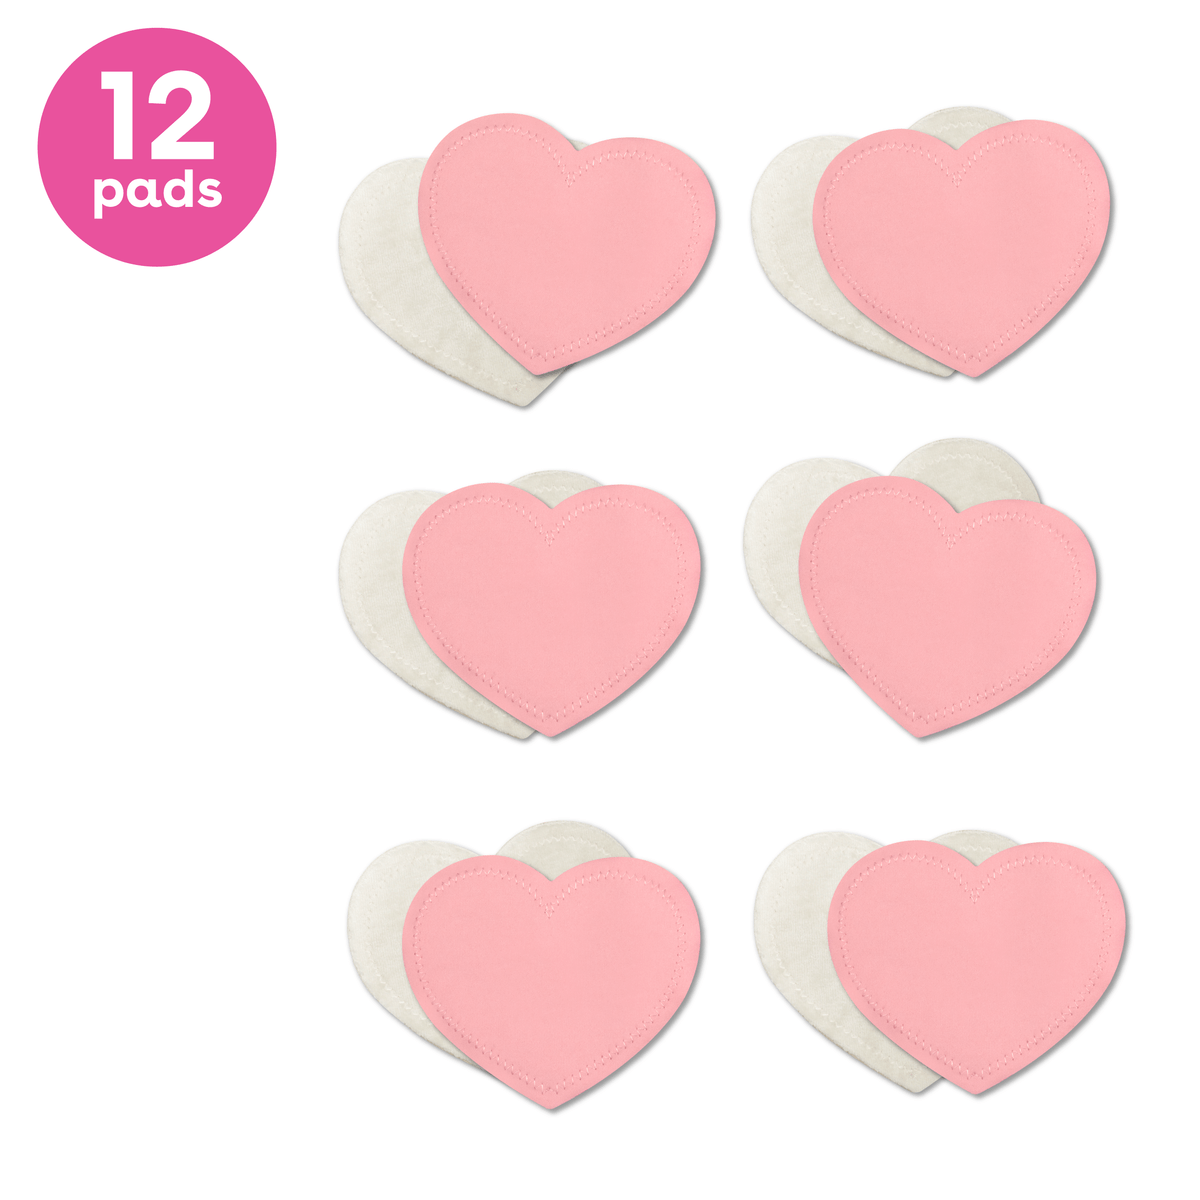 12 pink reusable nursing pads